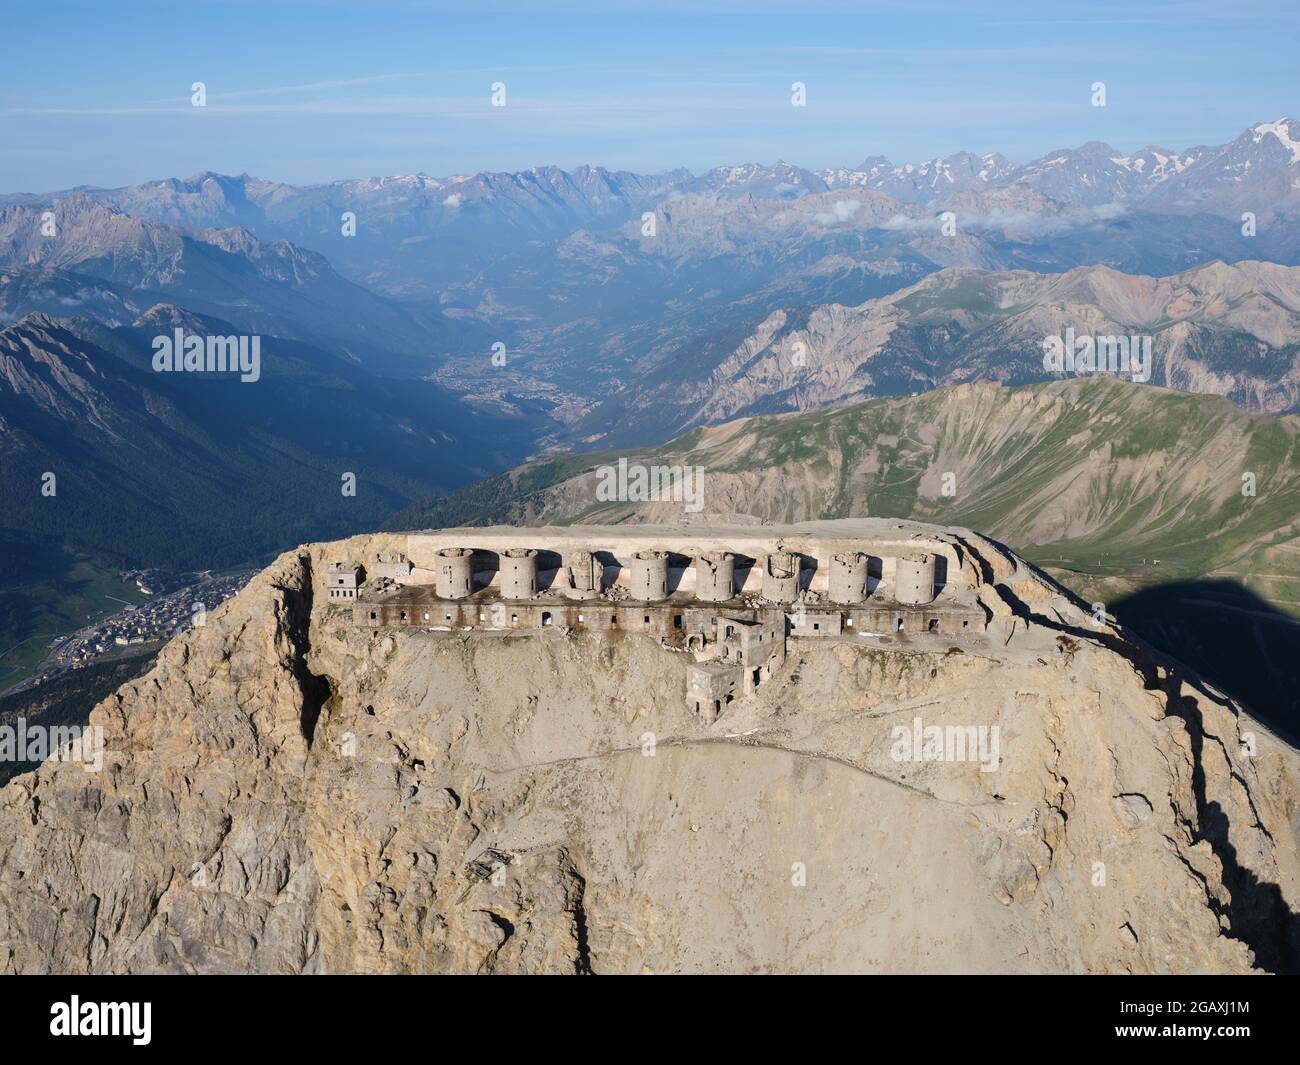 VUE AÉRIENNE. Batterie du Mont Chaberton, la plus haute fortification d'Europe à une altitude de 3131 mètres asl. Montgenèvre, Hautes-Alpes, France. Banque D'Images